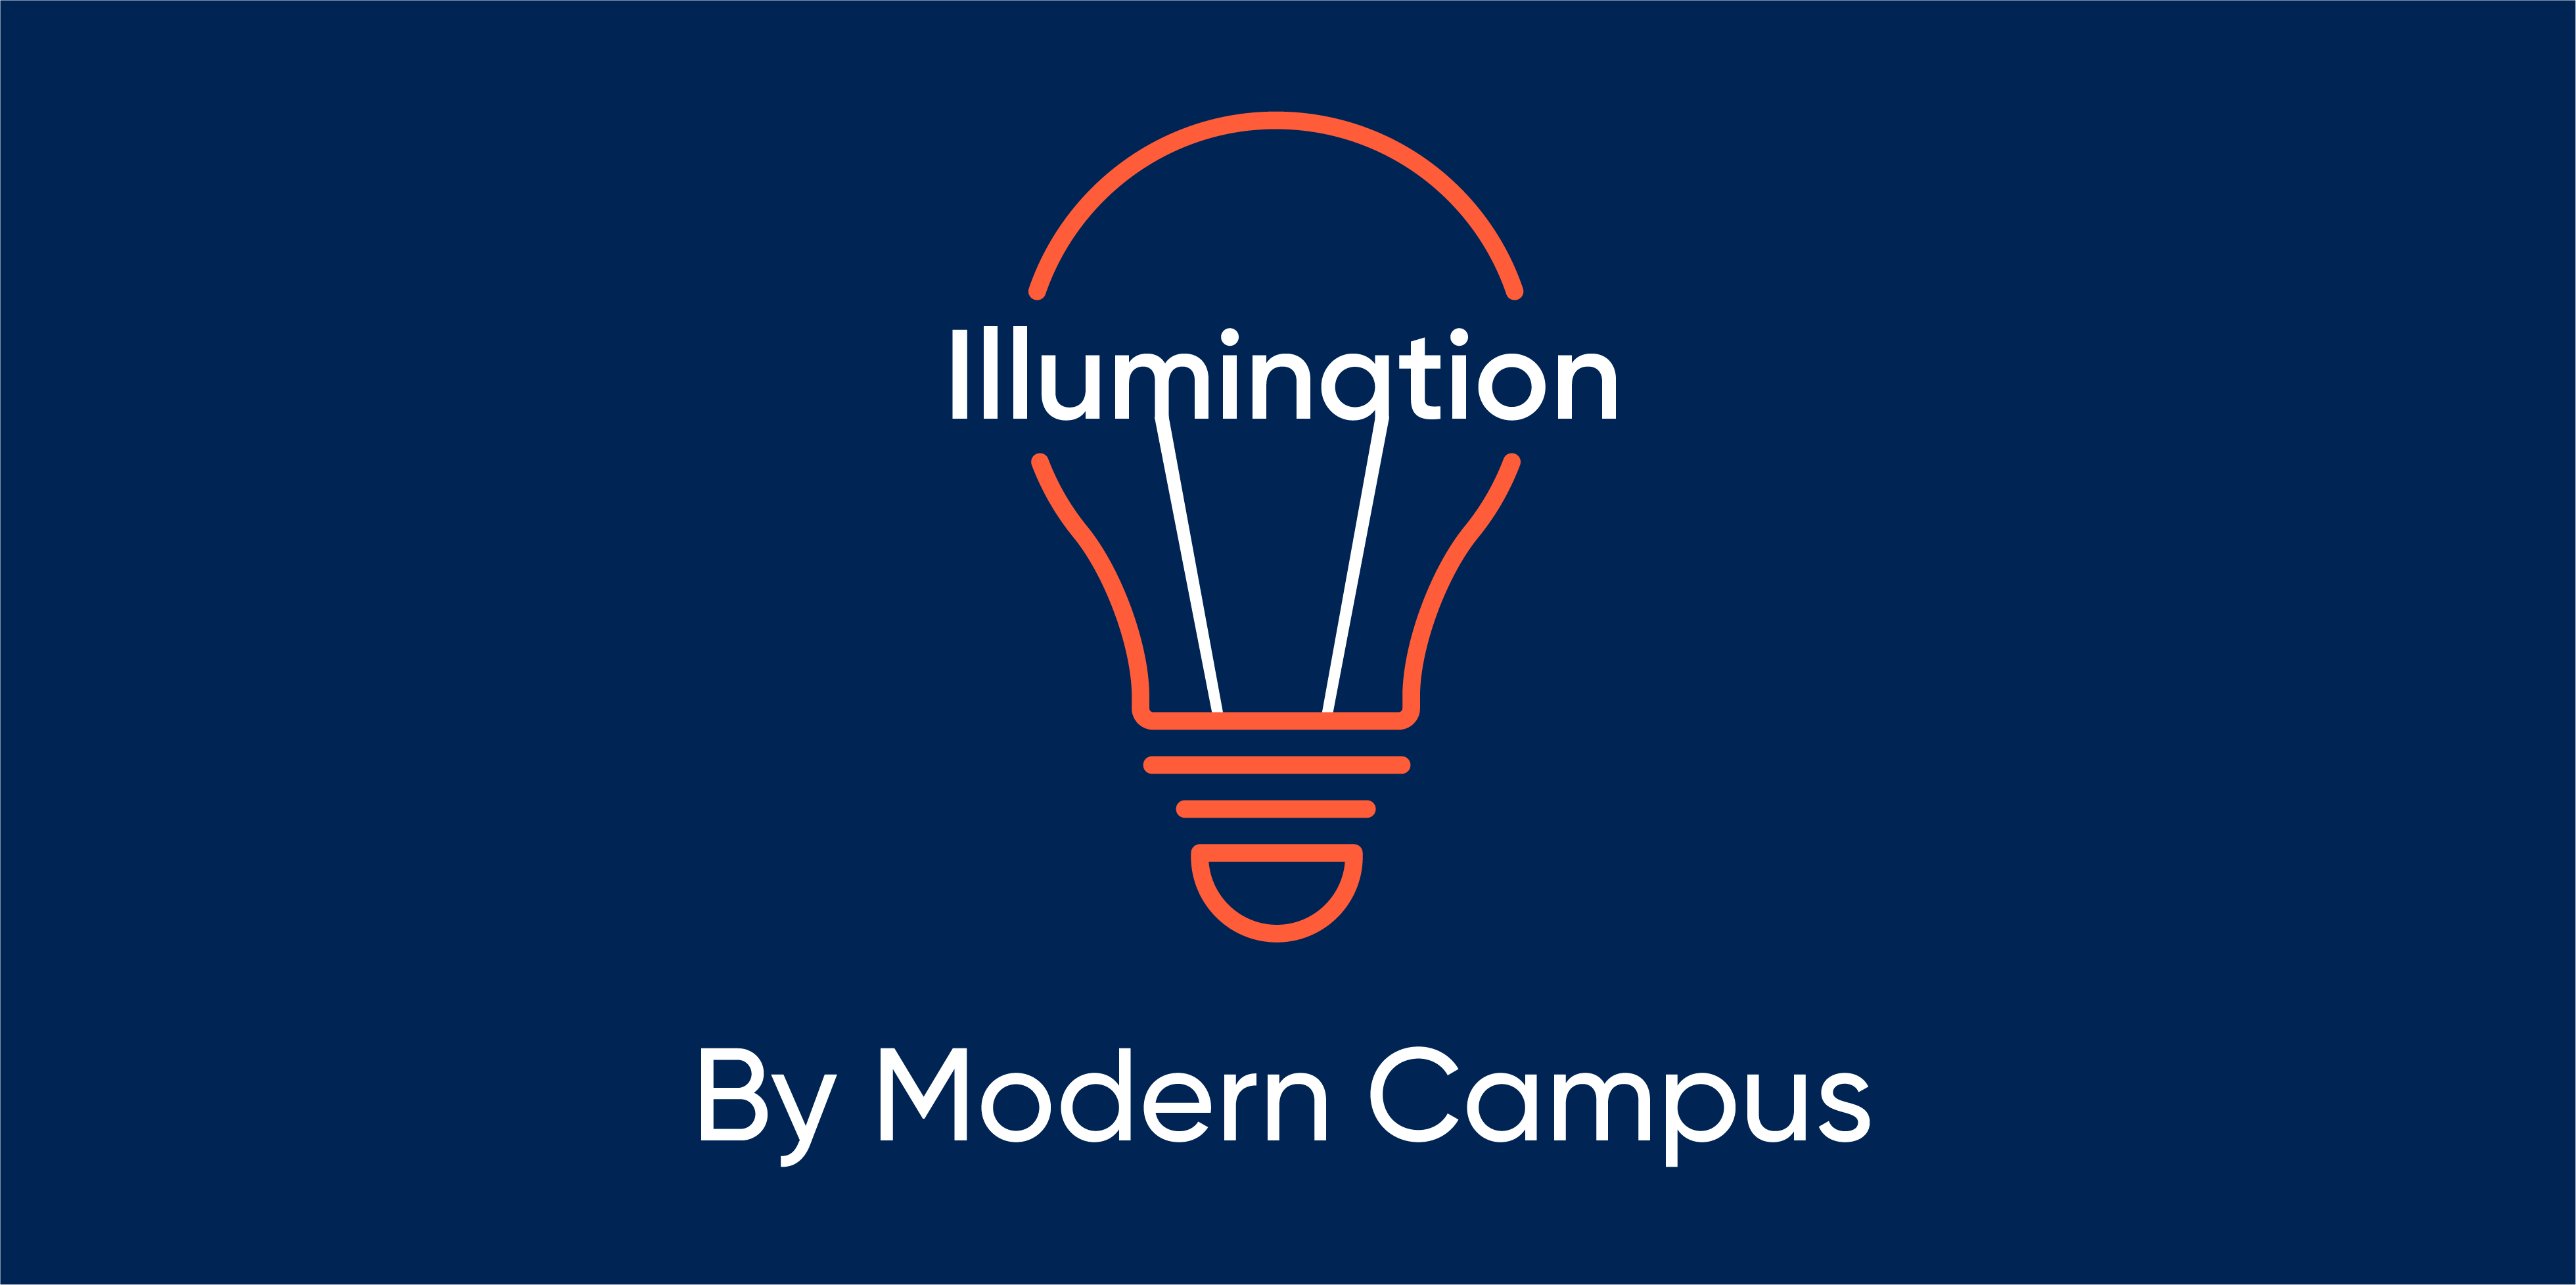 Episode 114: Illumination by Modern Campus